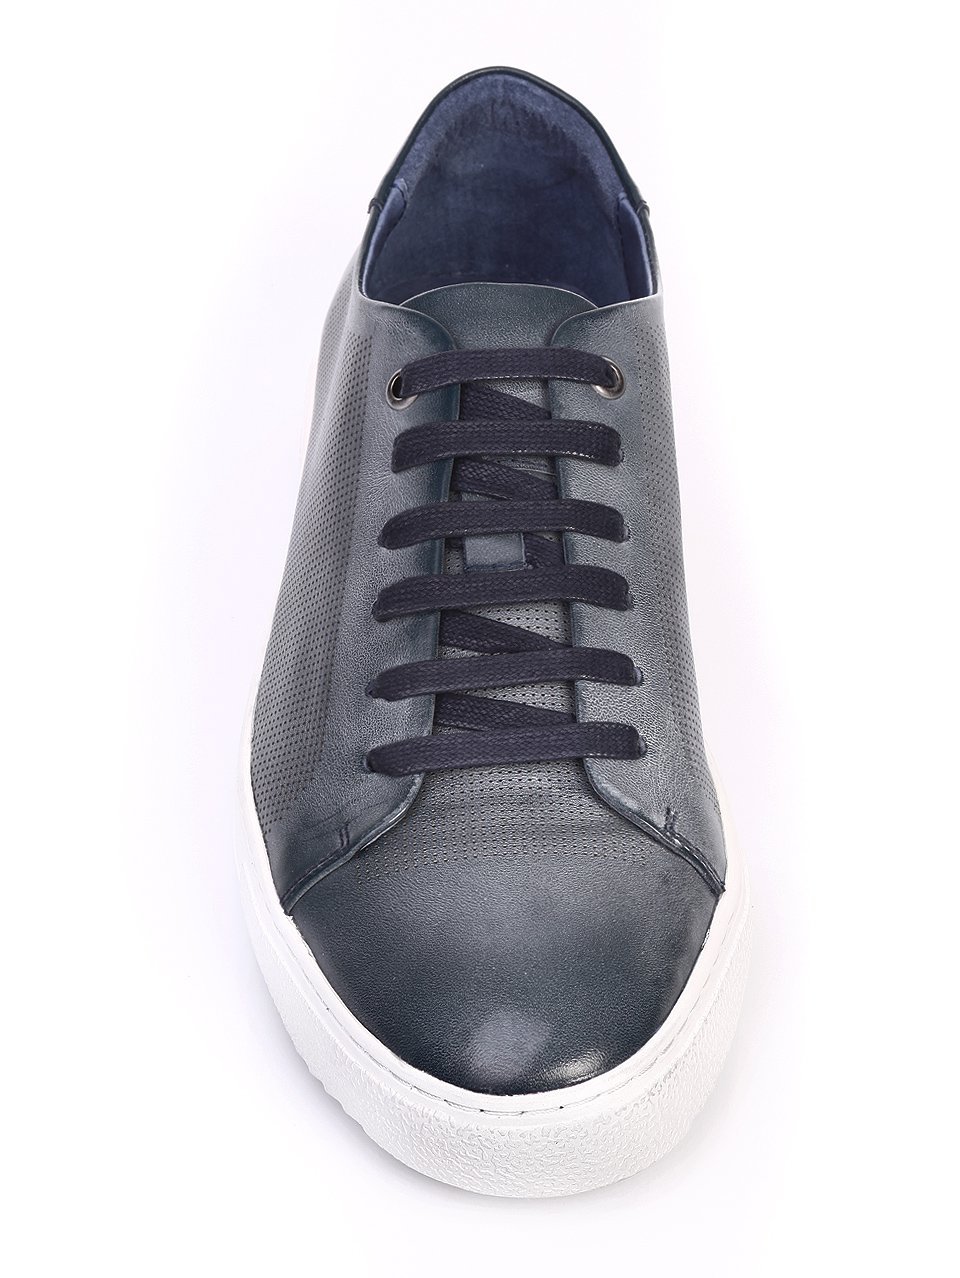 Ежедневни мъжки обувки от естествена кожа в синьо 7N-17387 navy